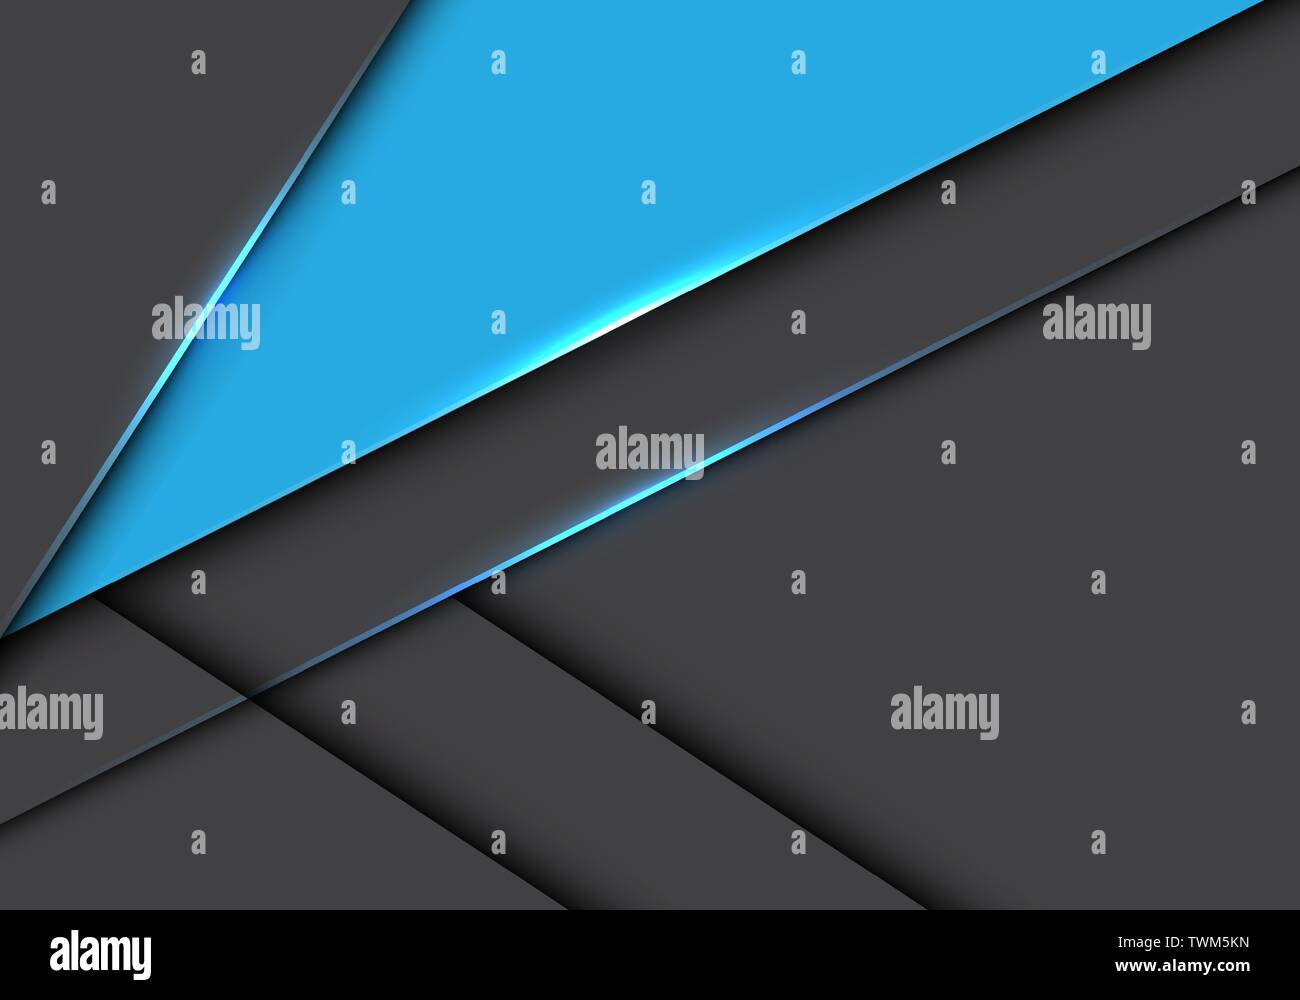 Résumé triangle bleu gris métallique design sur le chevauchement moderne futuristic background vector illustration. Illustration de Vecteur